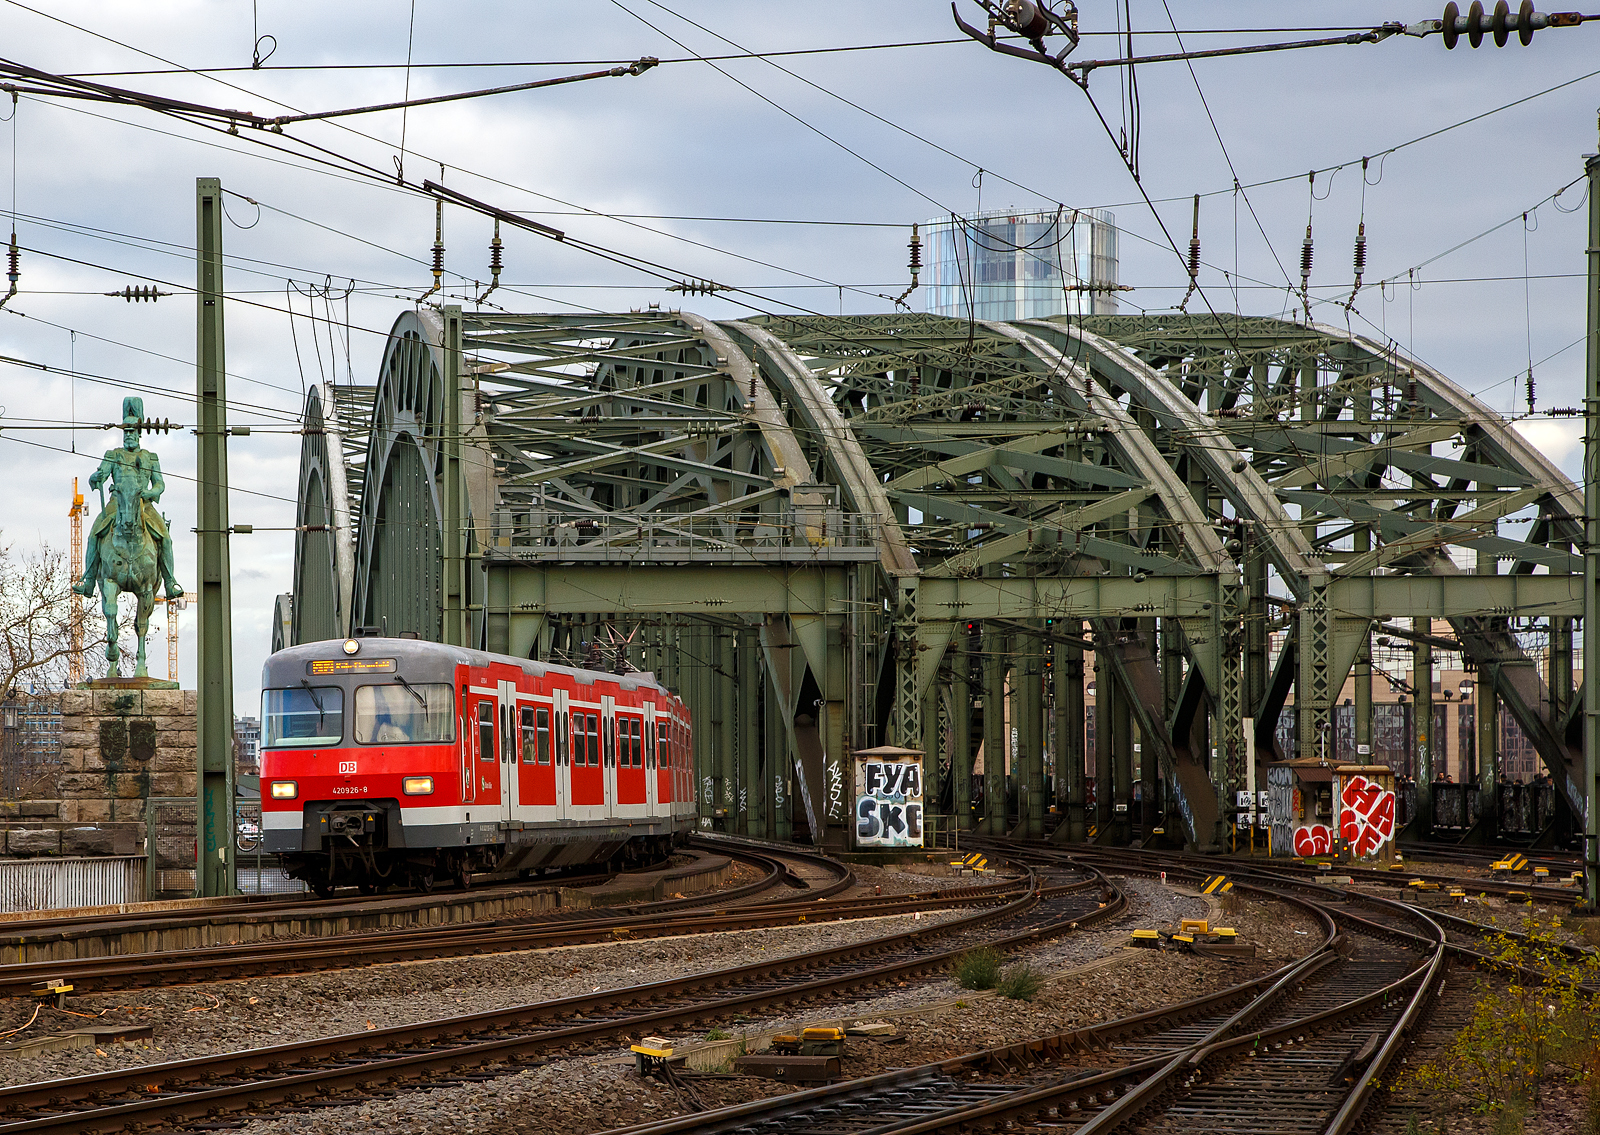 Der ET 420 (bestehend aus 420 926-8 / 421 426 -8 / 420 426-9) der S-Bahn Köln verlässt am 22.12.2018 gerade die Hohenzollernbrücke und fährt bald in den Hbf Köln ein. 